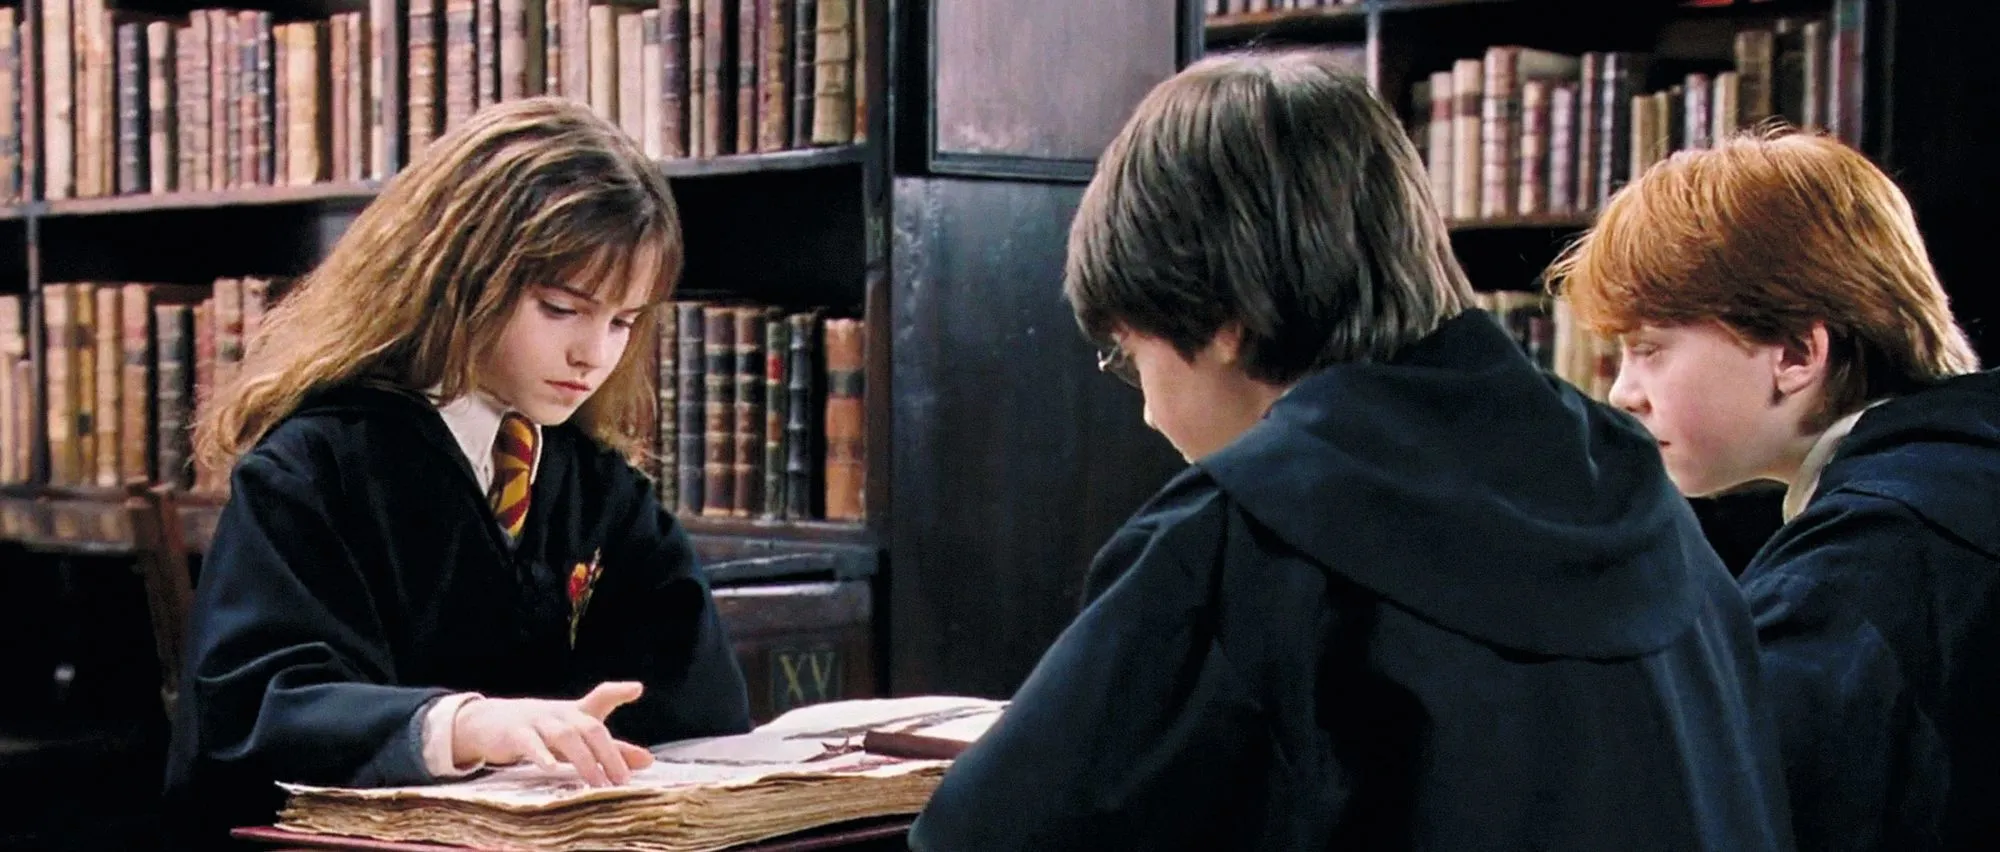 Hermione à la bibliotheque - Harry Potter